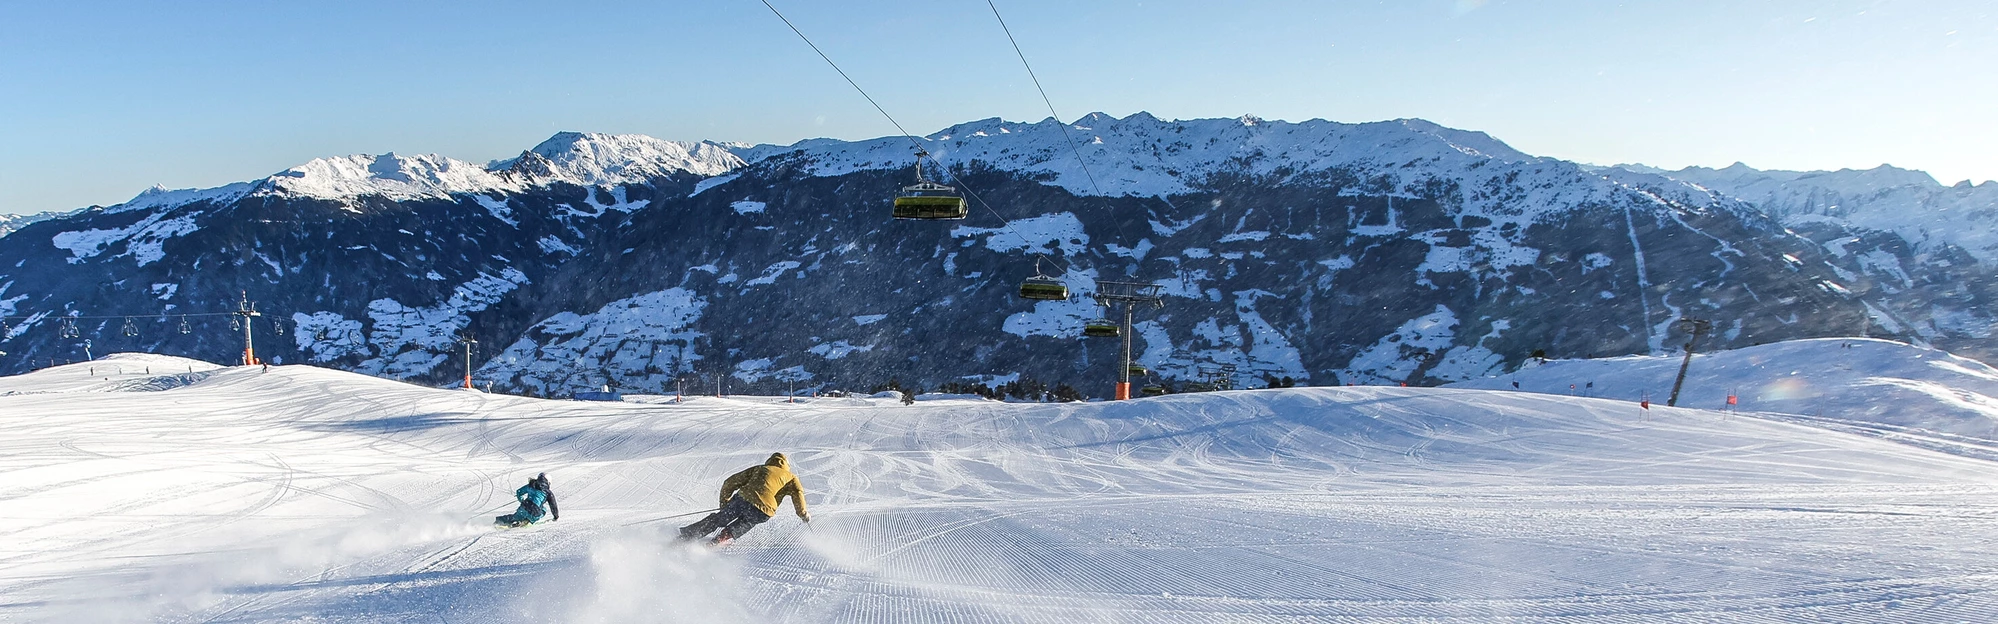 Skifahren Winter Zillertal @ Erste Ferienregion im Zillertal/Andi Frank